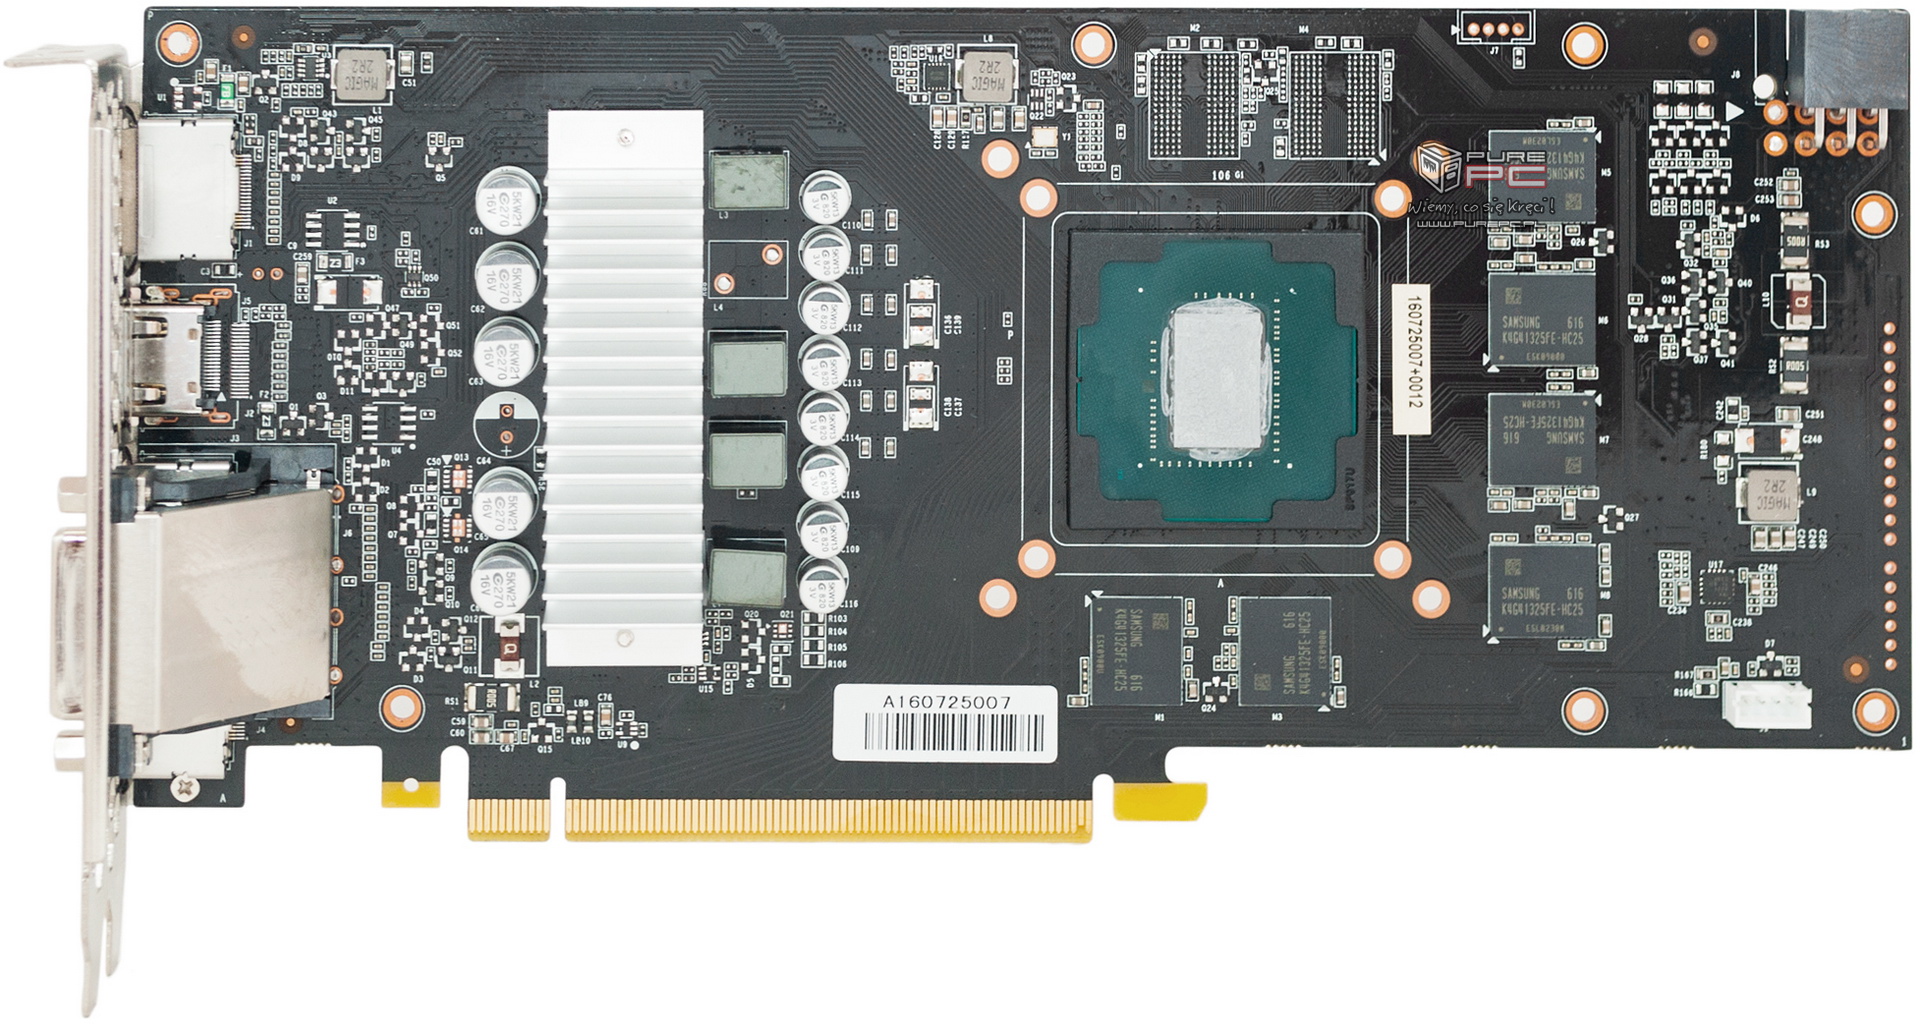 GeForce GTX 1060 3GB vs Radeon RX 470 